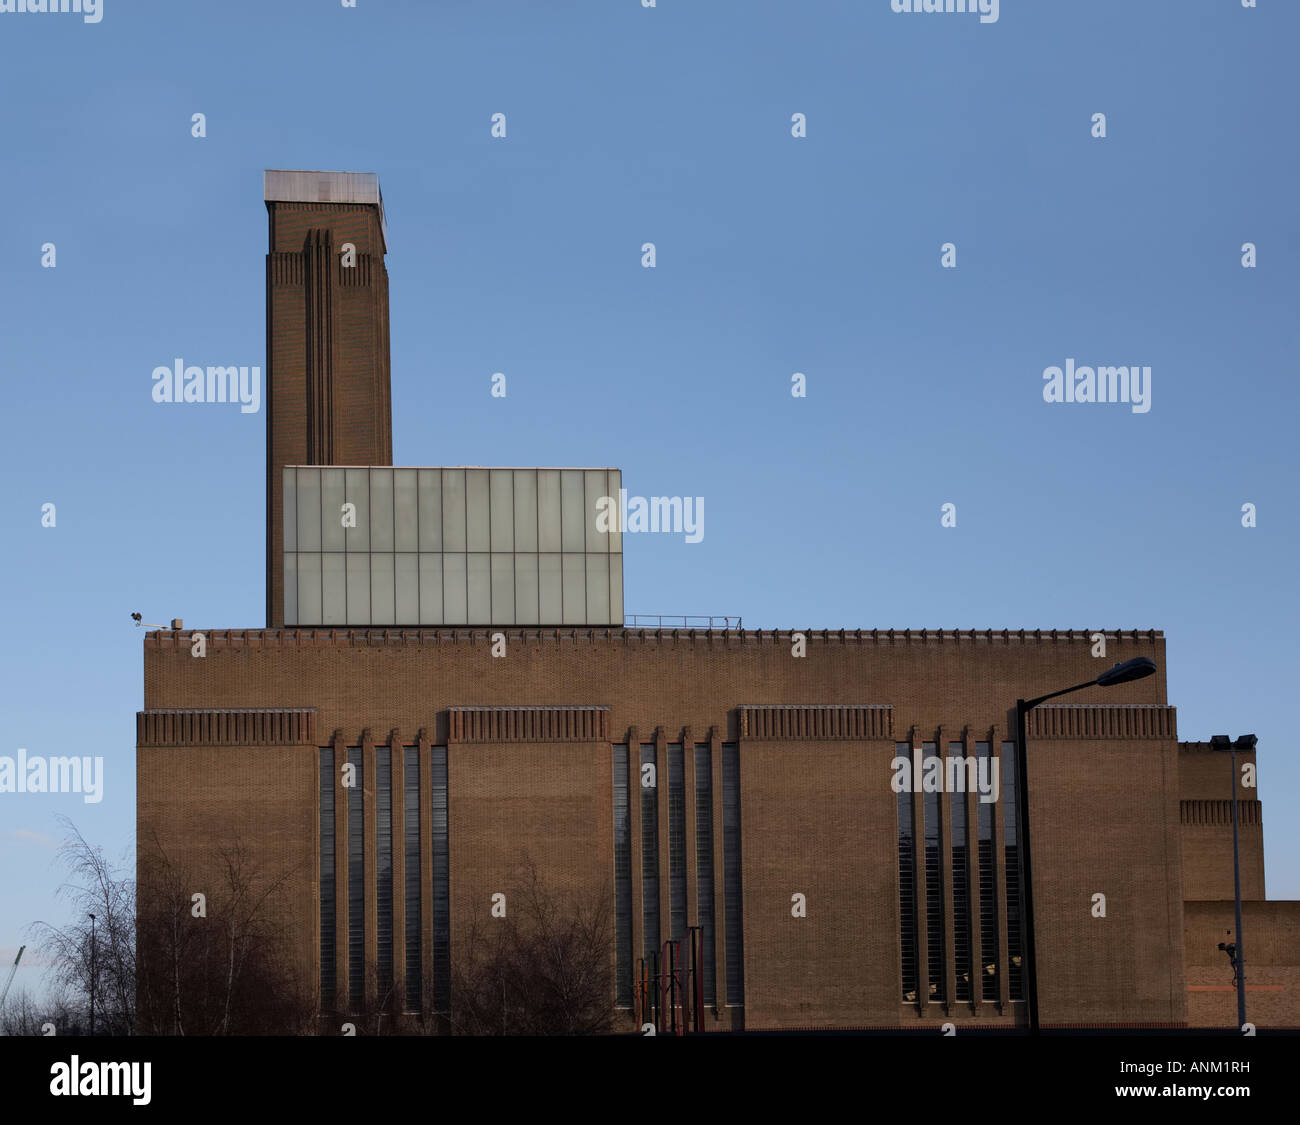 Tate Modern Art Gallery à Londres Angleterre Royaume-uni extérieur Banque D'Images